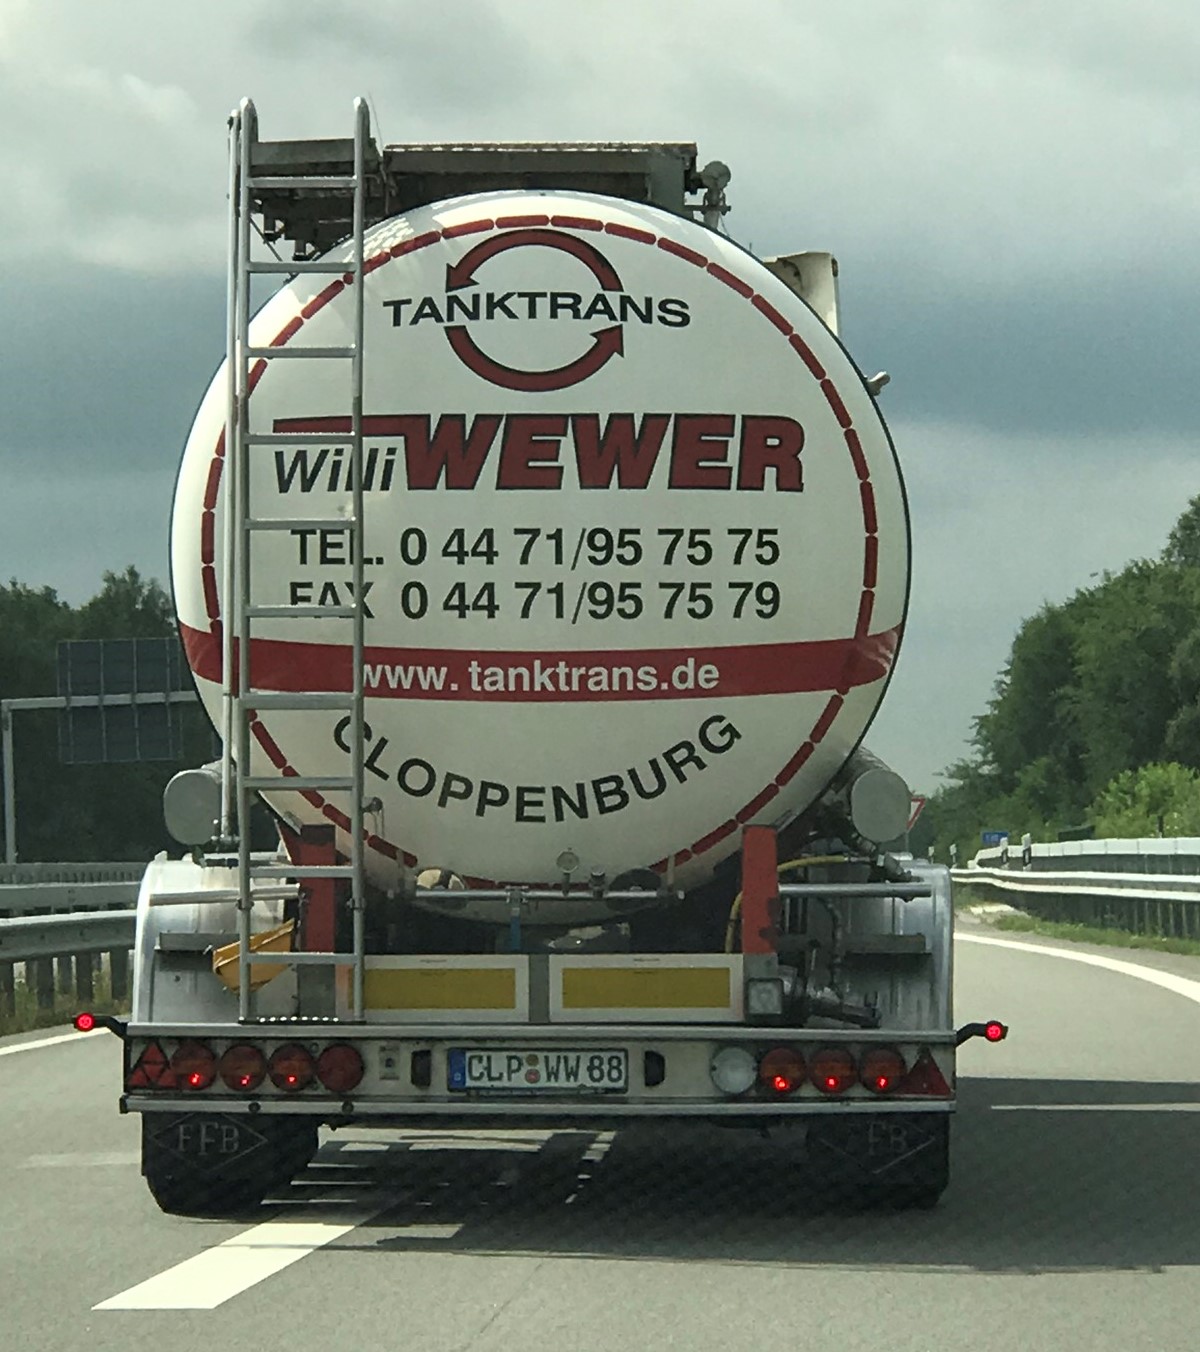 Bild 1 Willi Wewer - Internationale Tanktransporte in Cloppenburg